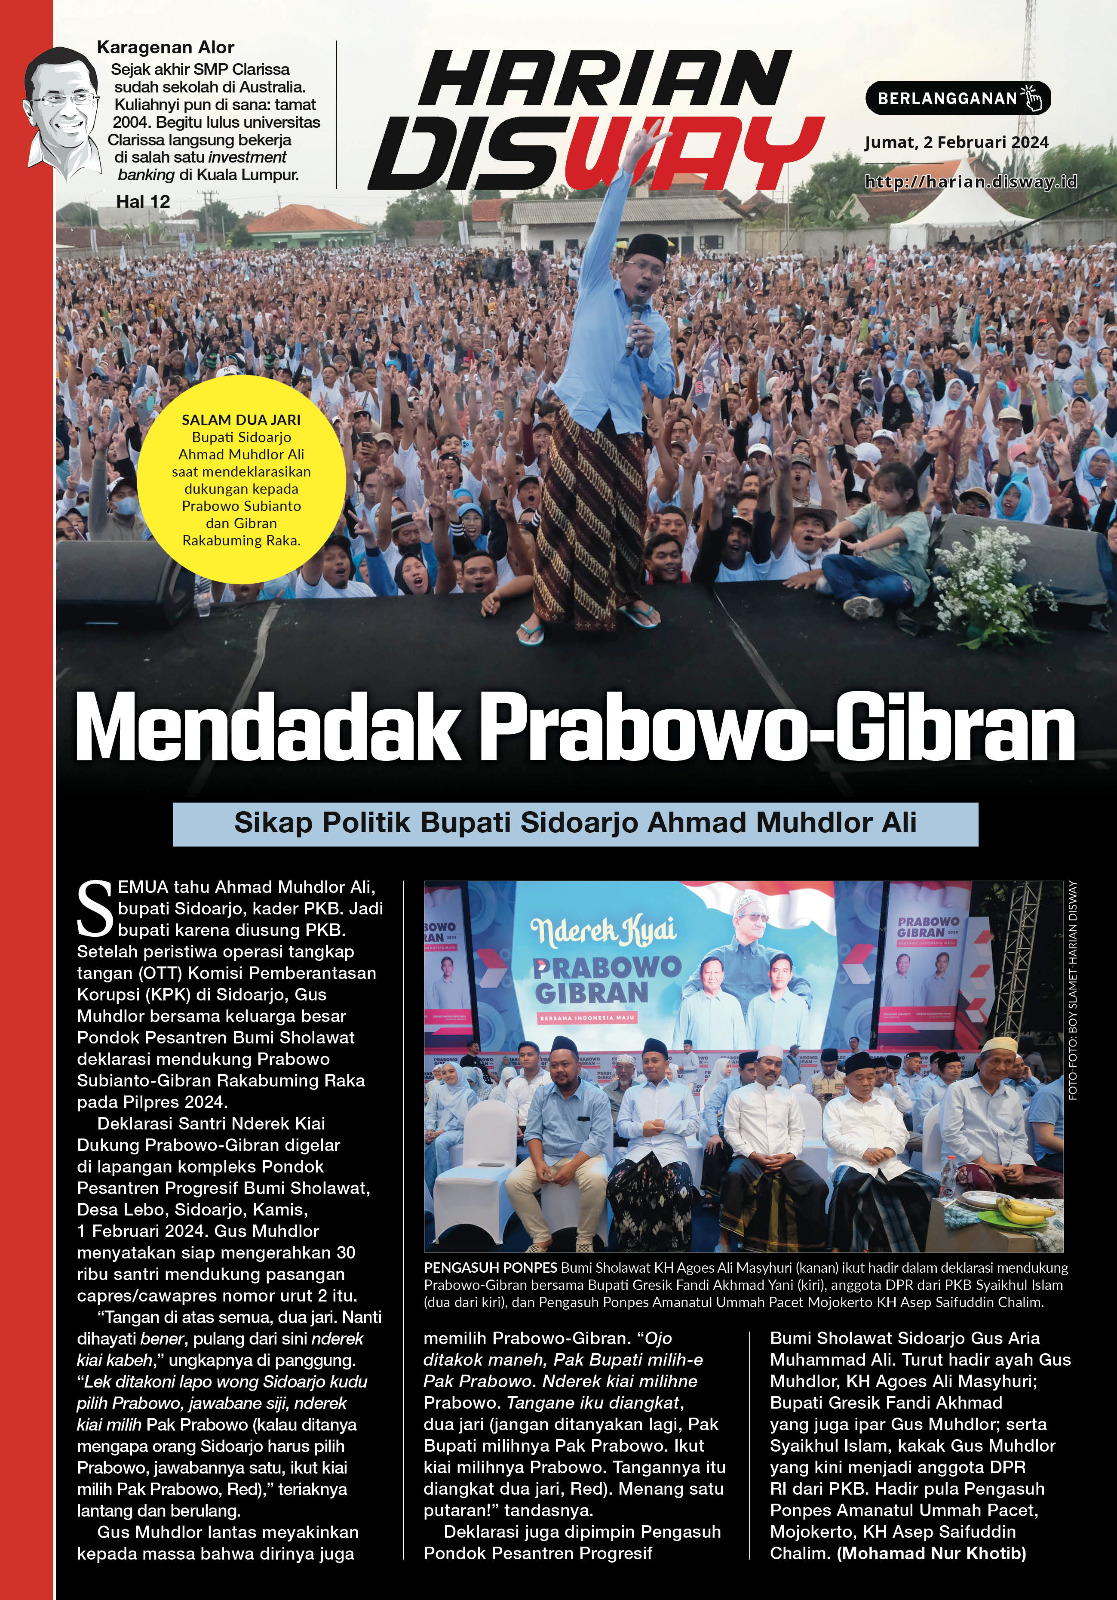 Mendadak Prabowo-Gibran